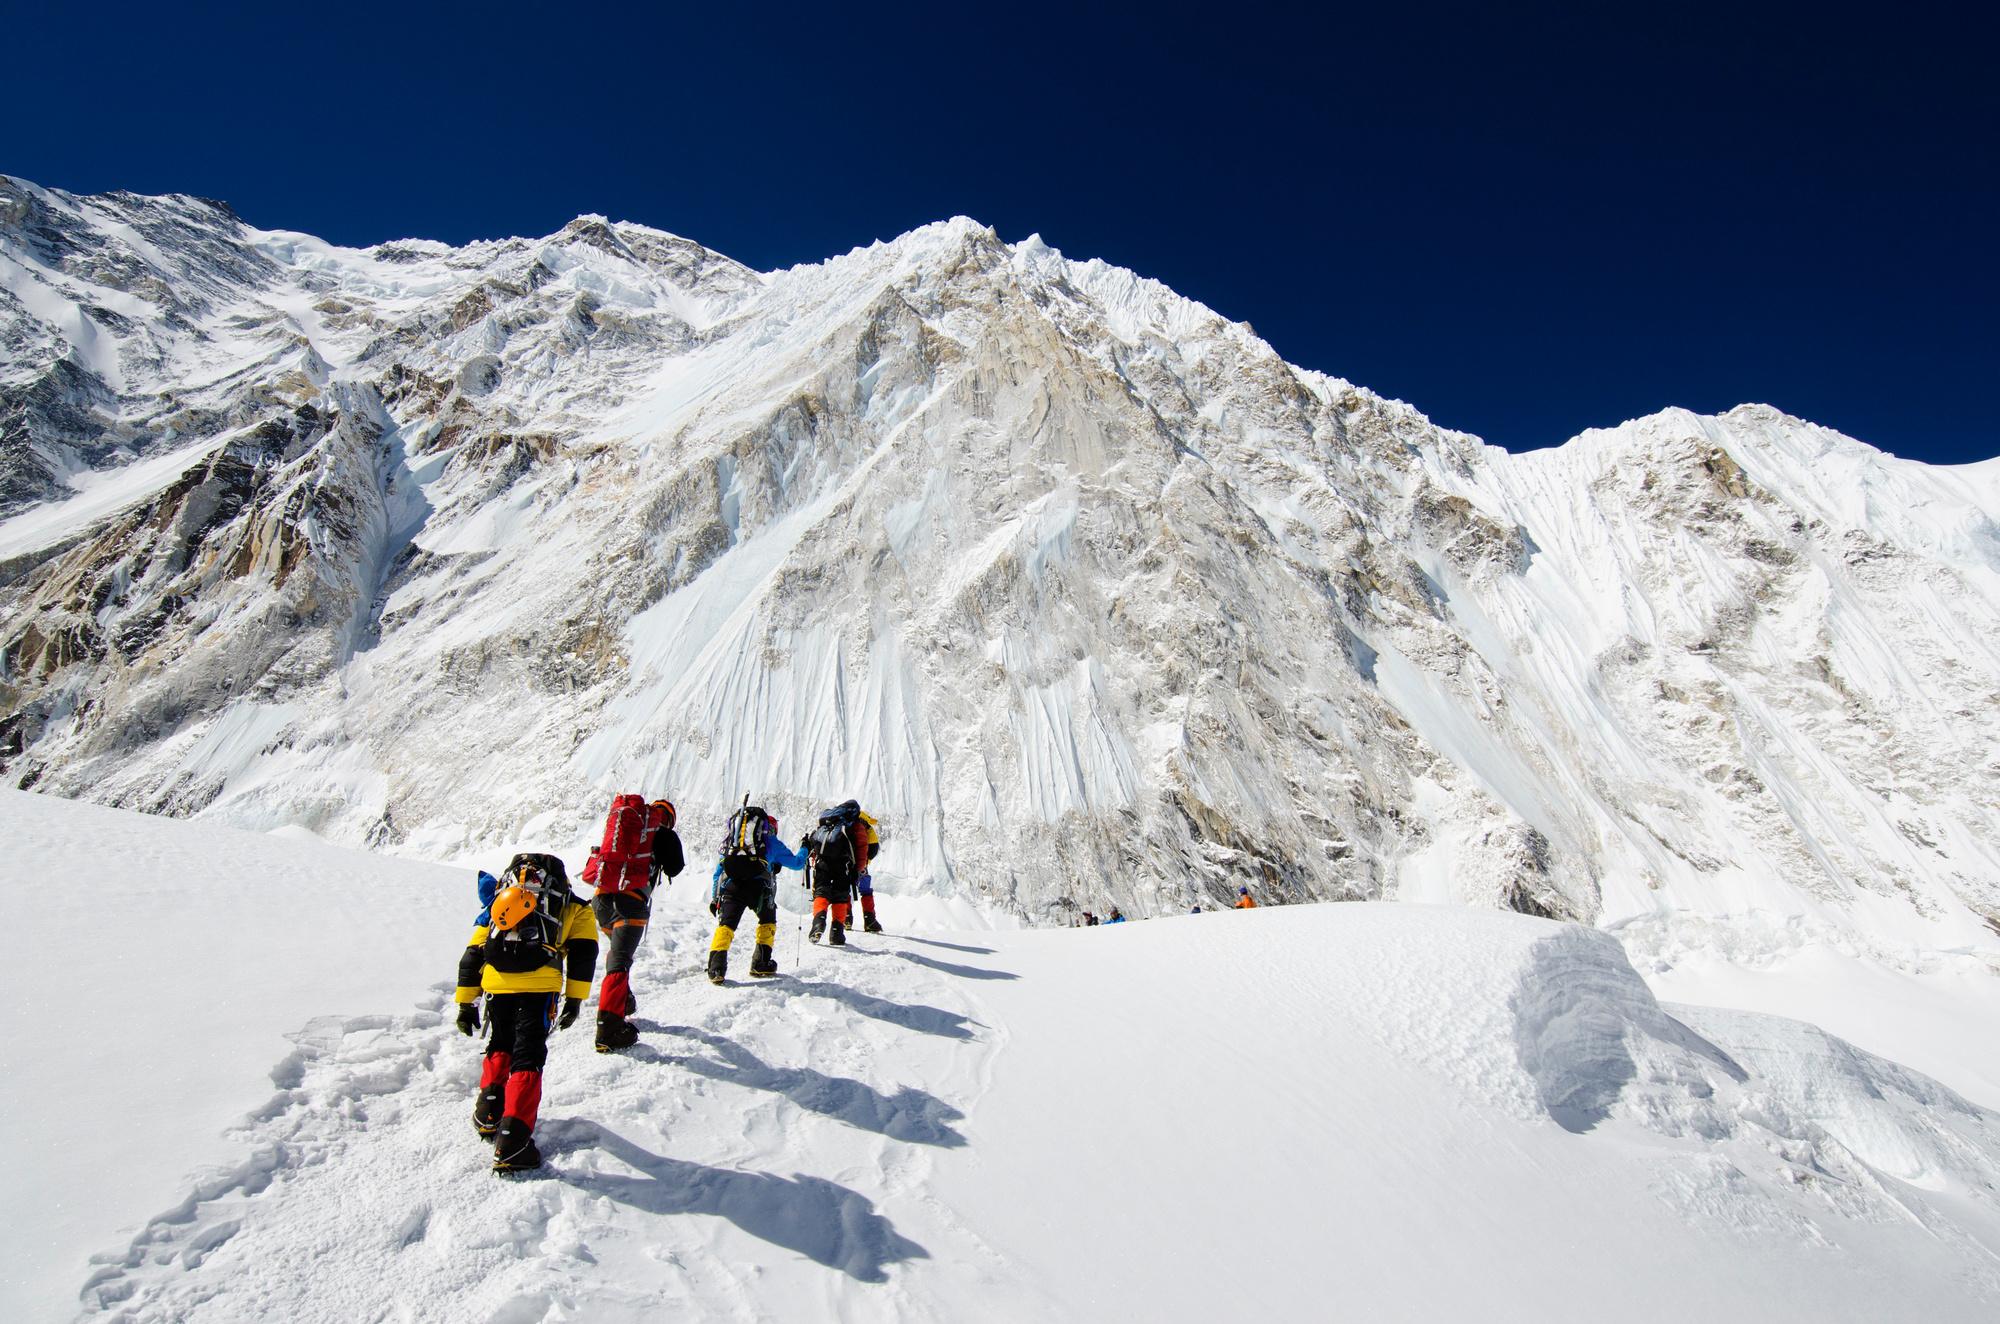 Klimmers op weg naar de top van de Mount Everest.